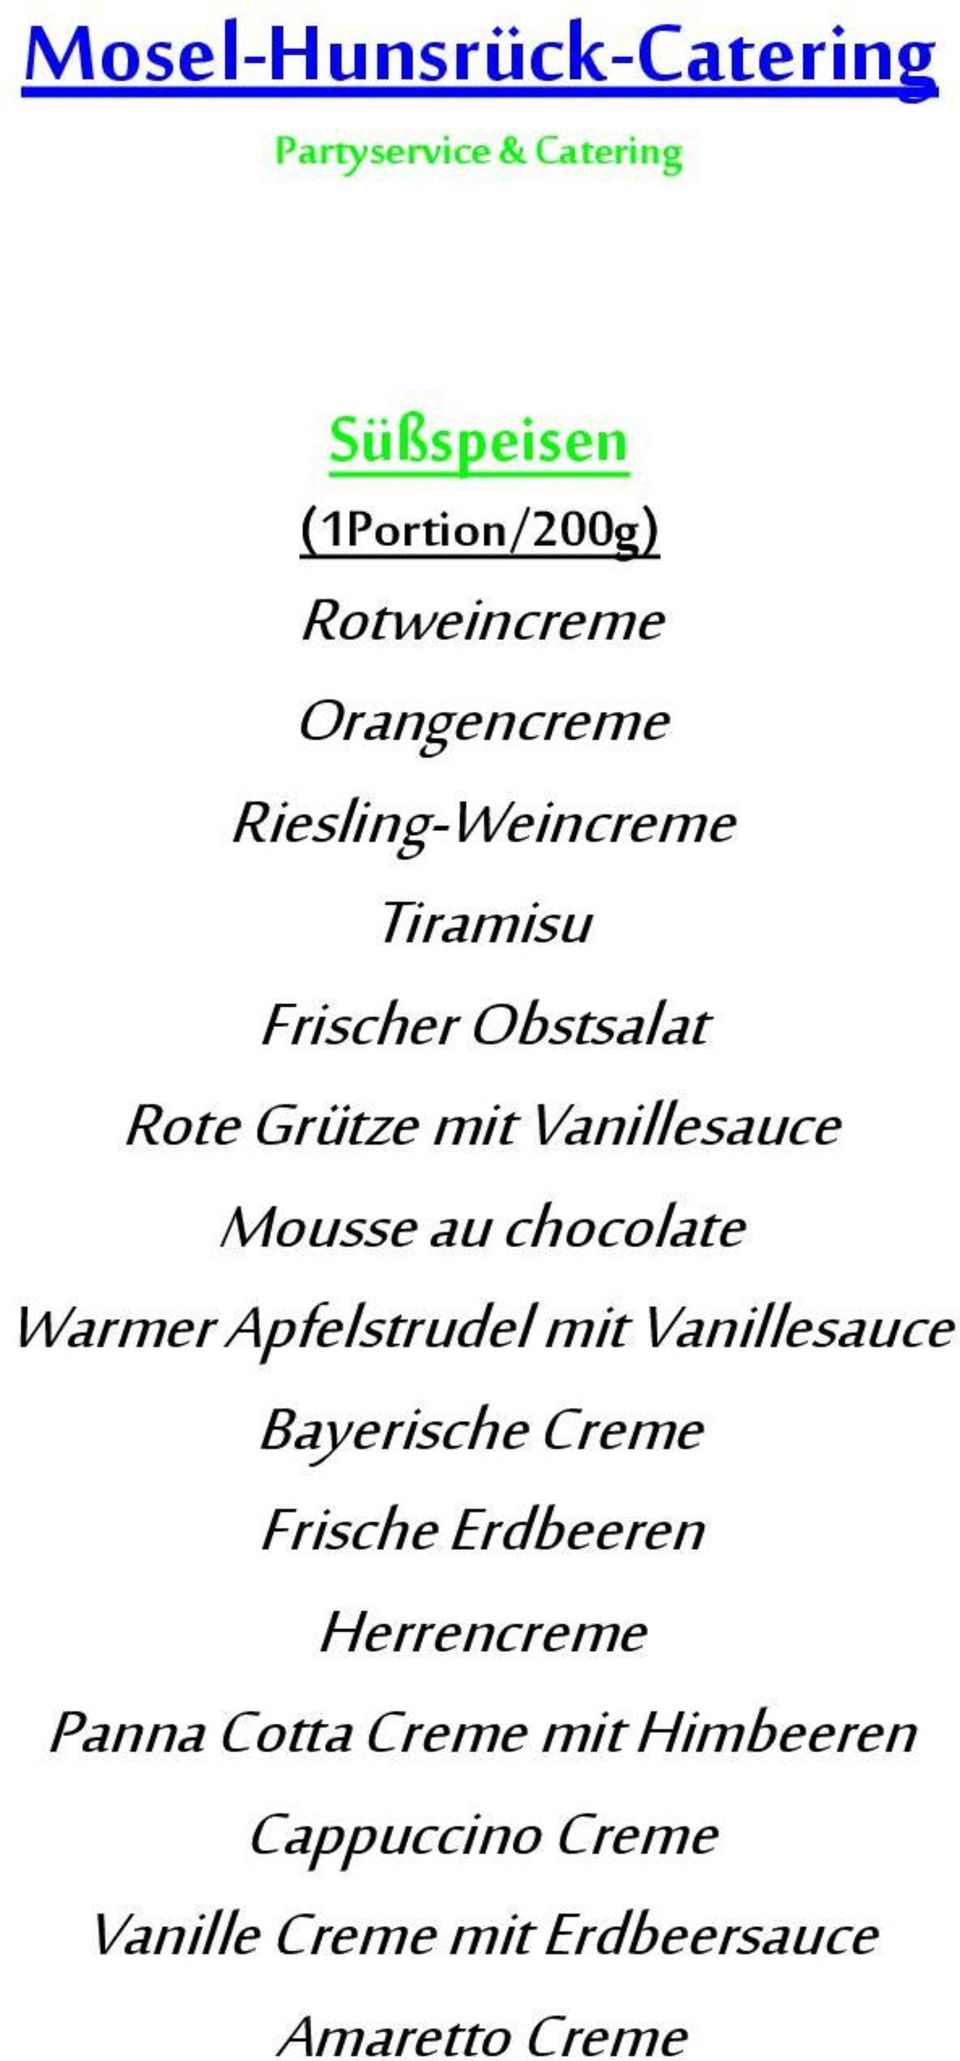 Apfelstrudel mit Vanillesauce Bayerische Creme Frische Erdbeeren Herrencreme